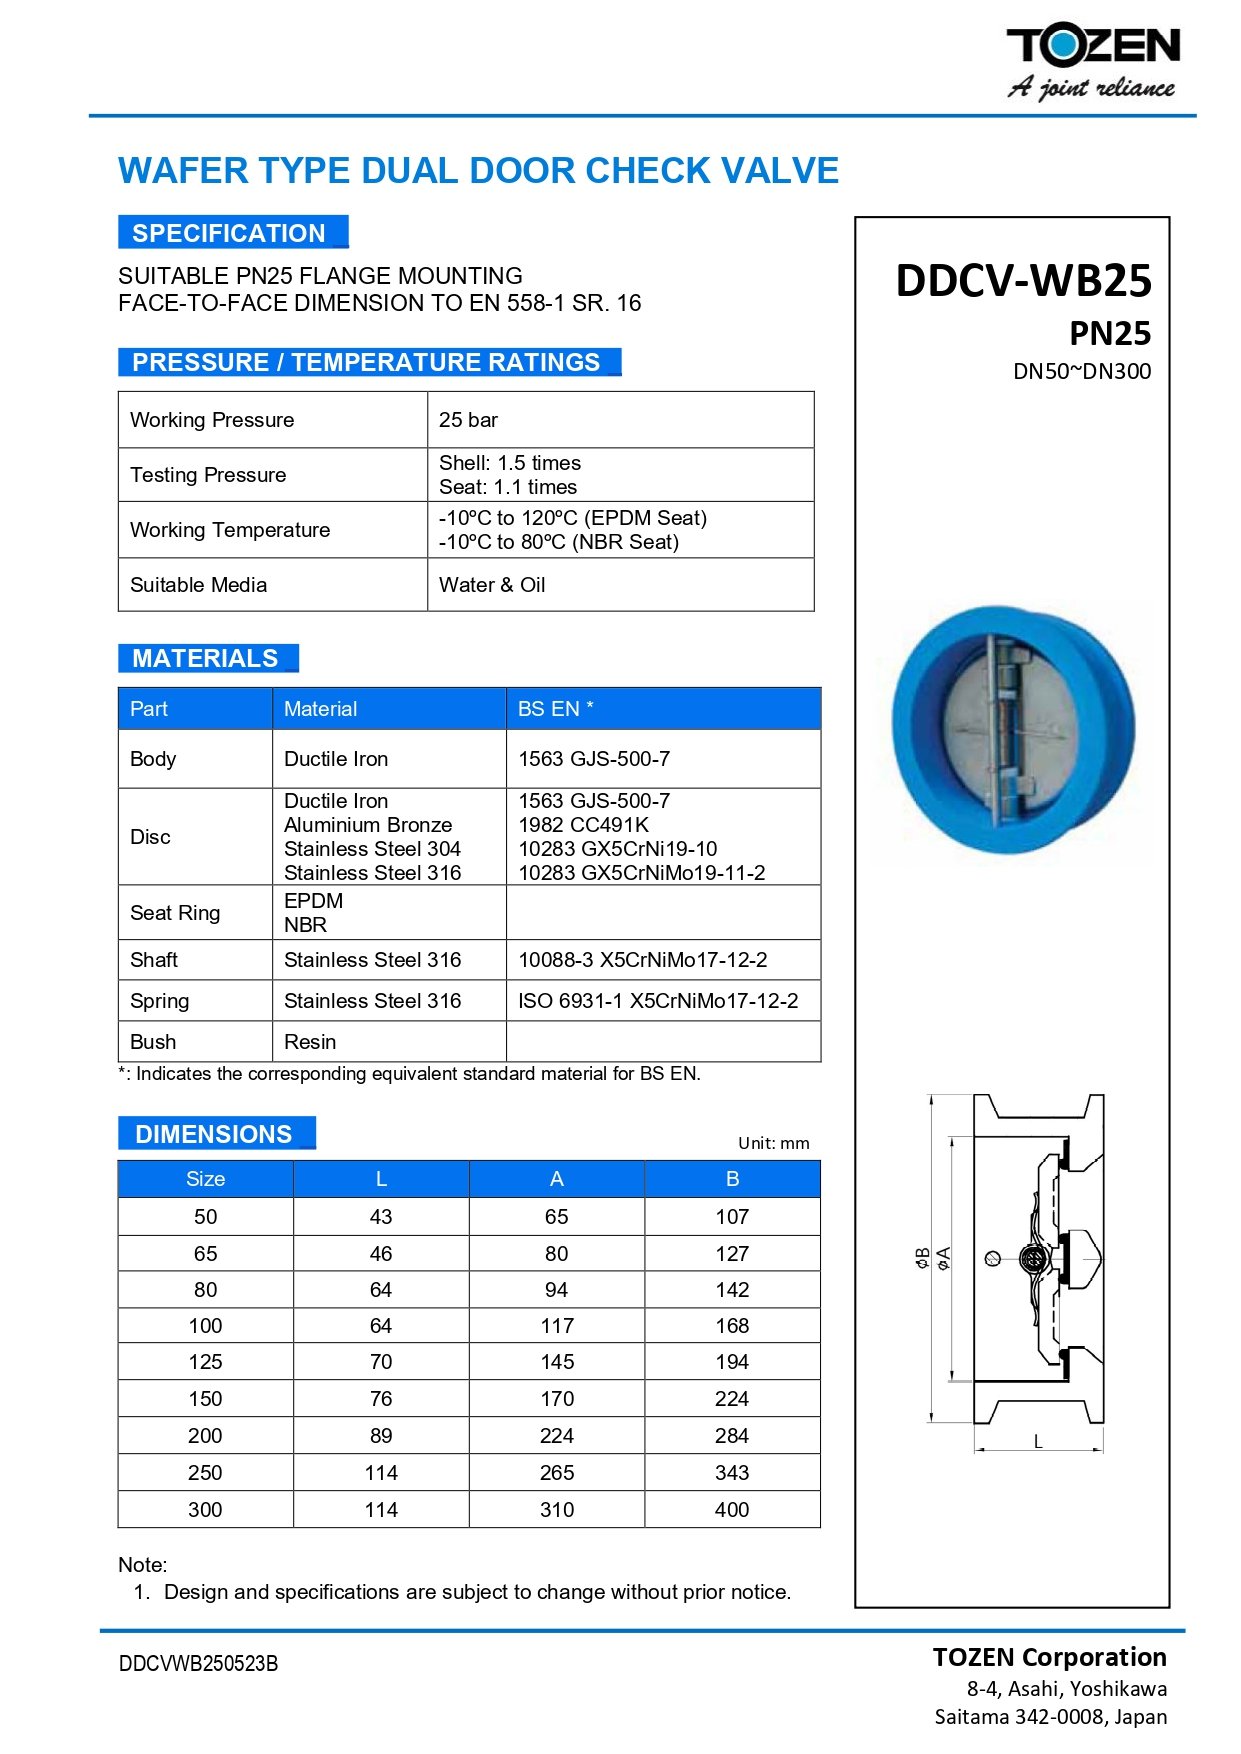 DDCV-WB25